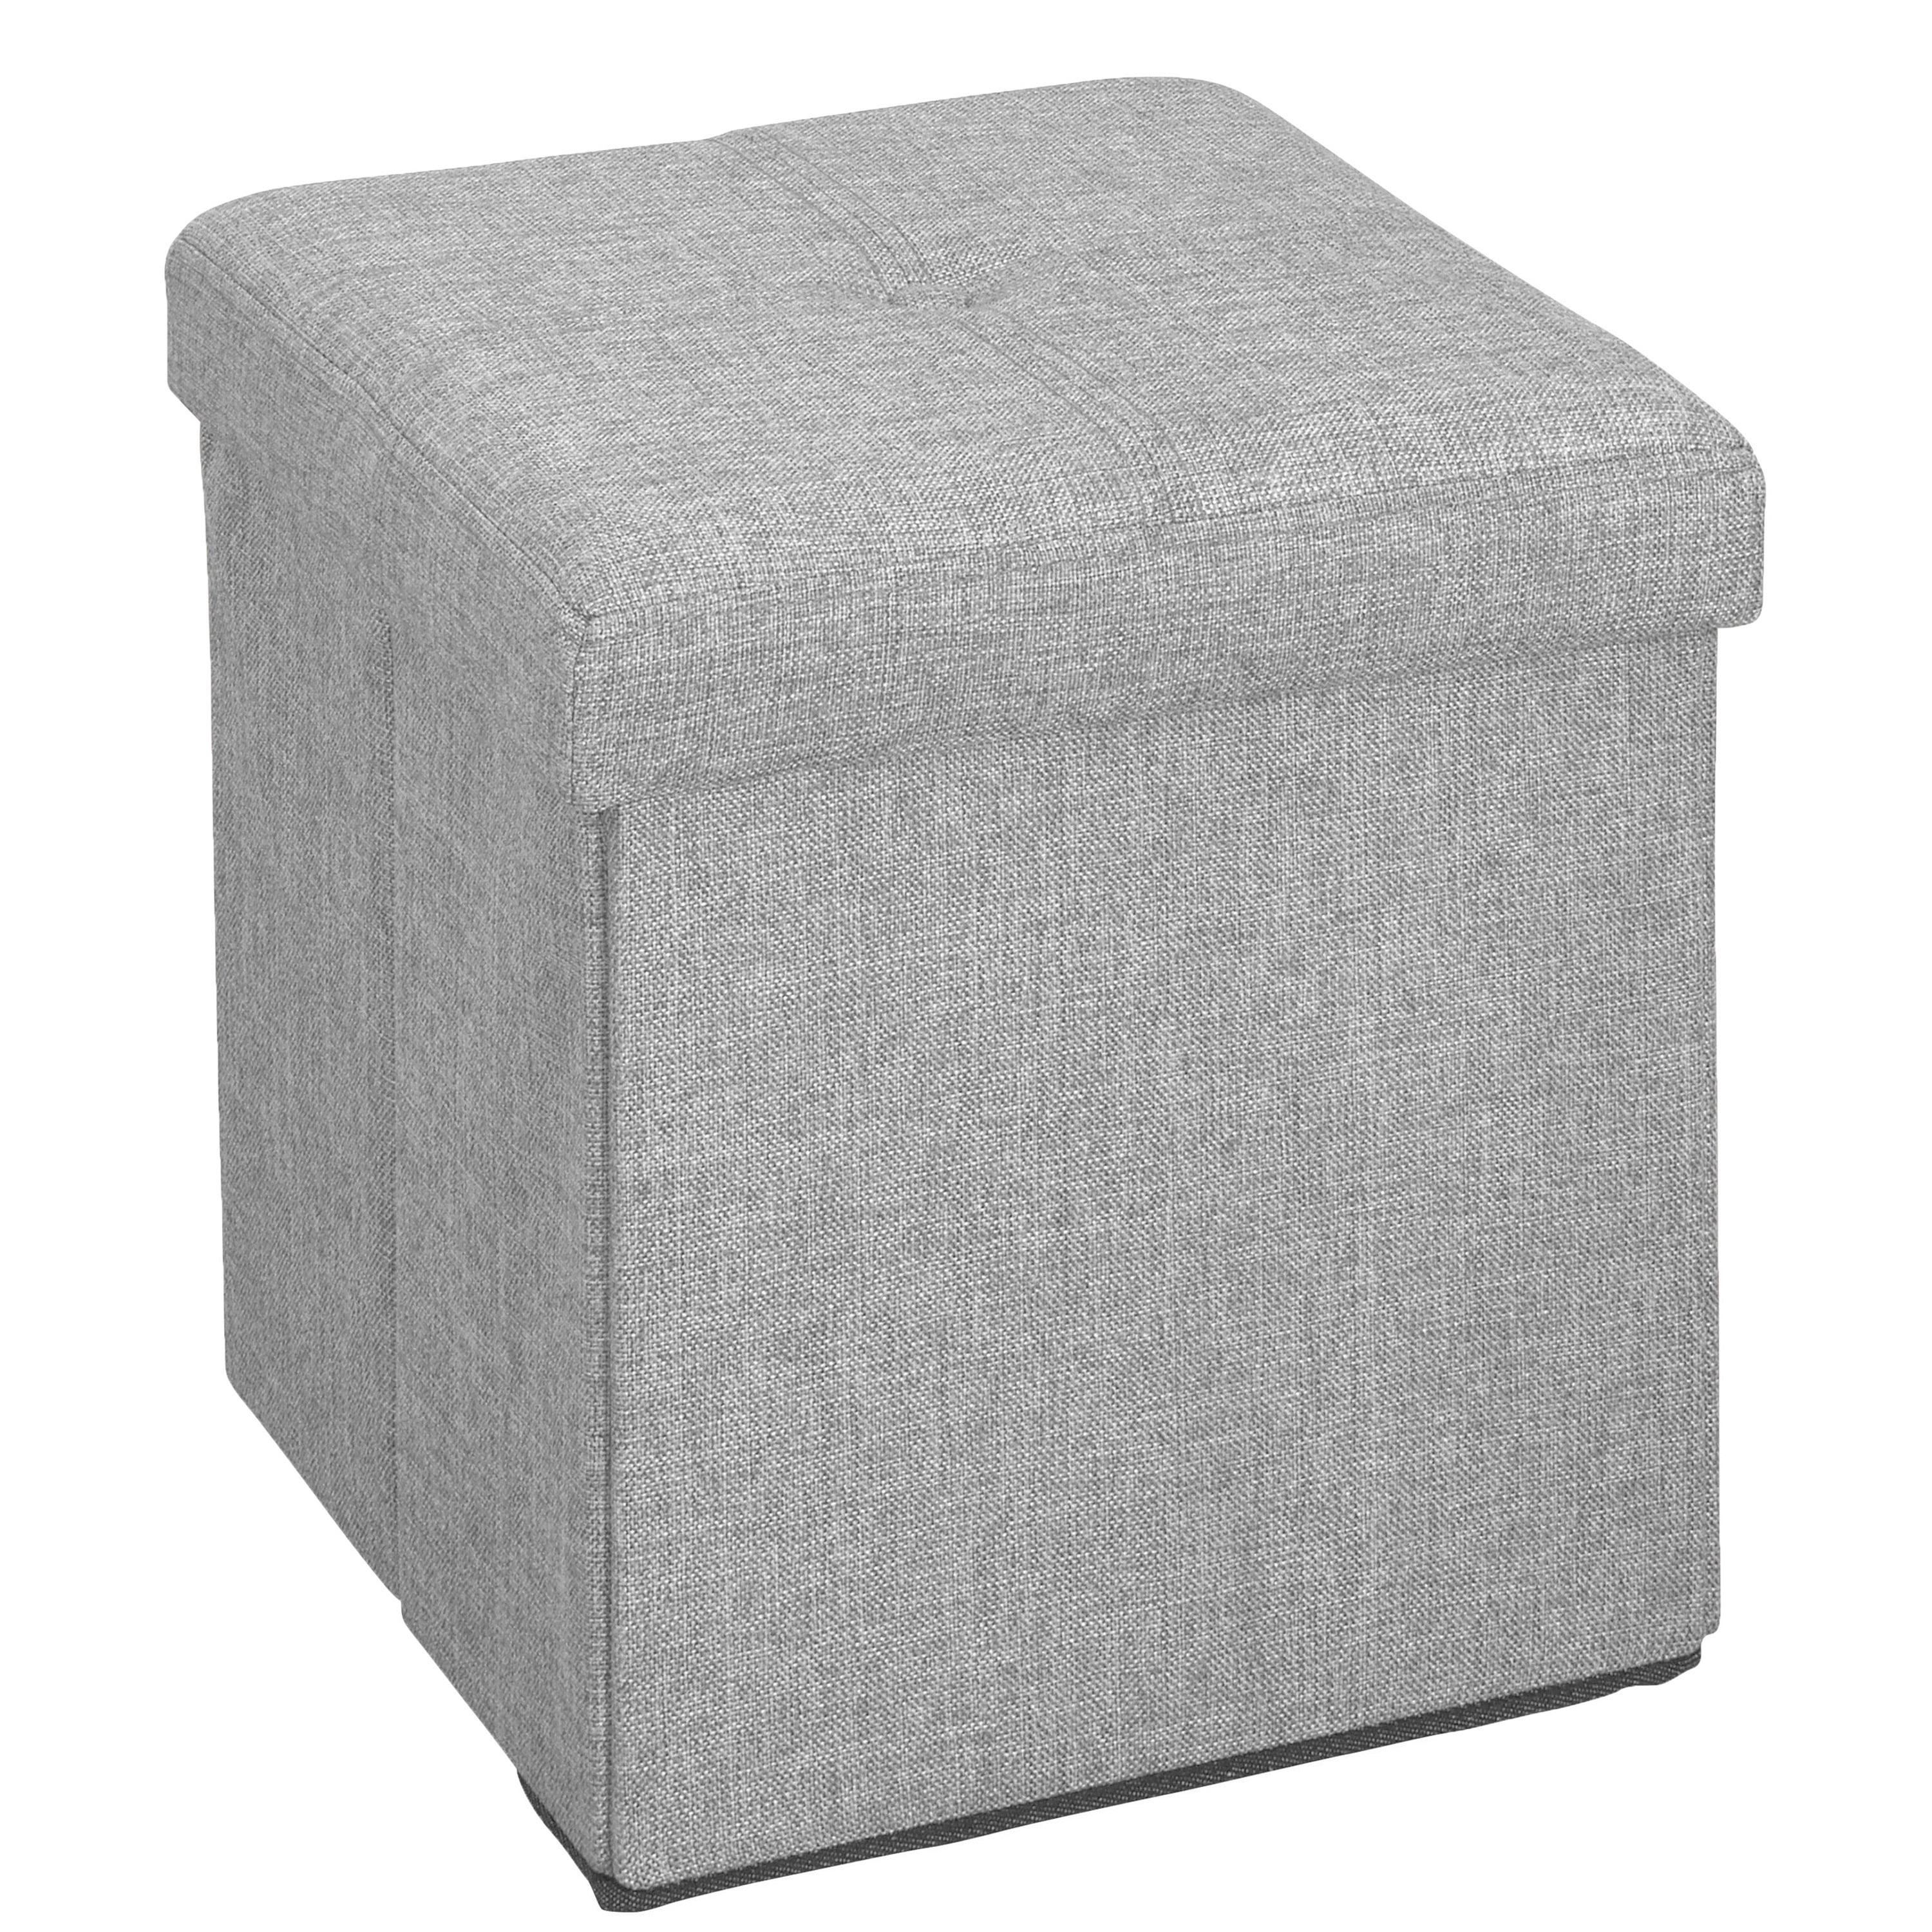 Casual Gray Faux Linen Square Storage Ottoman Cube